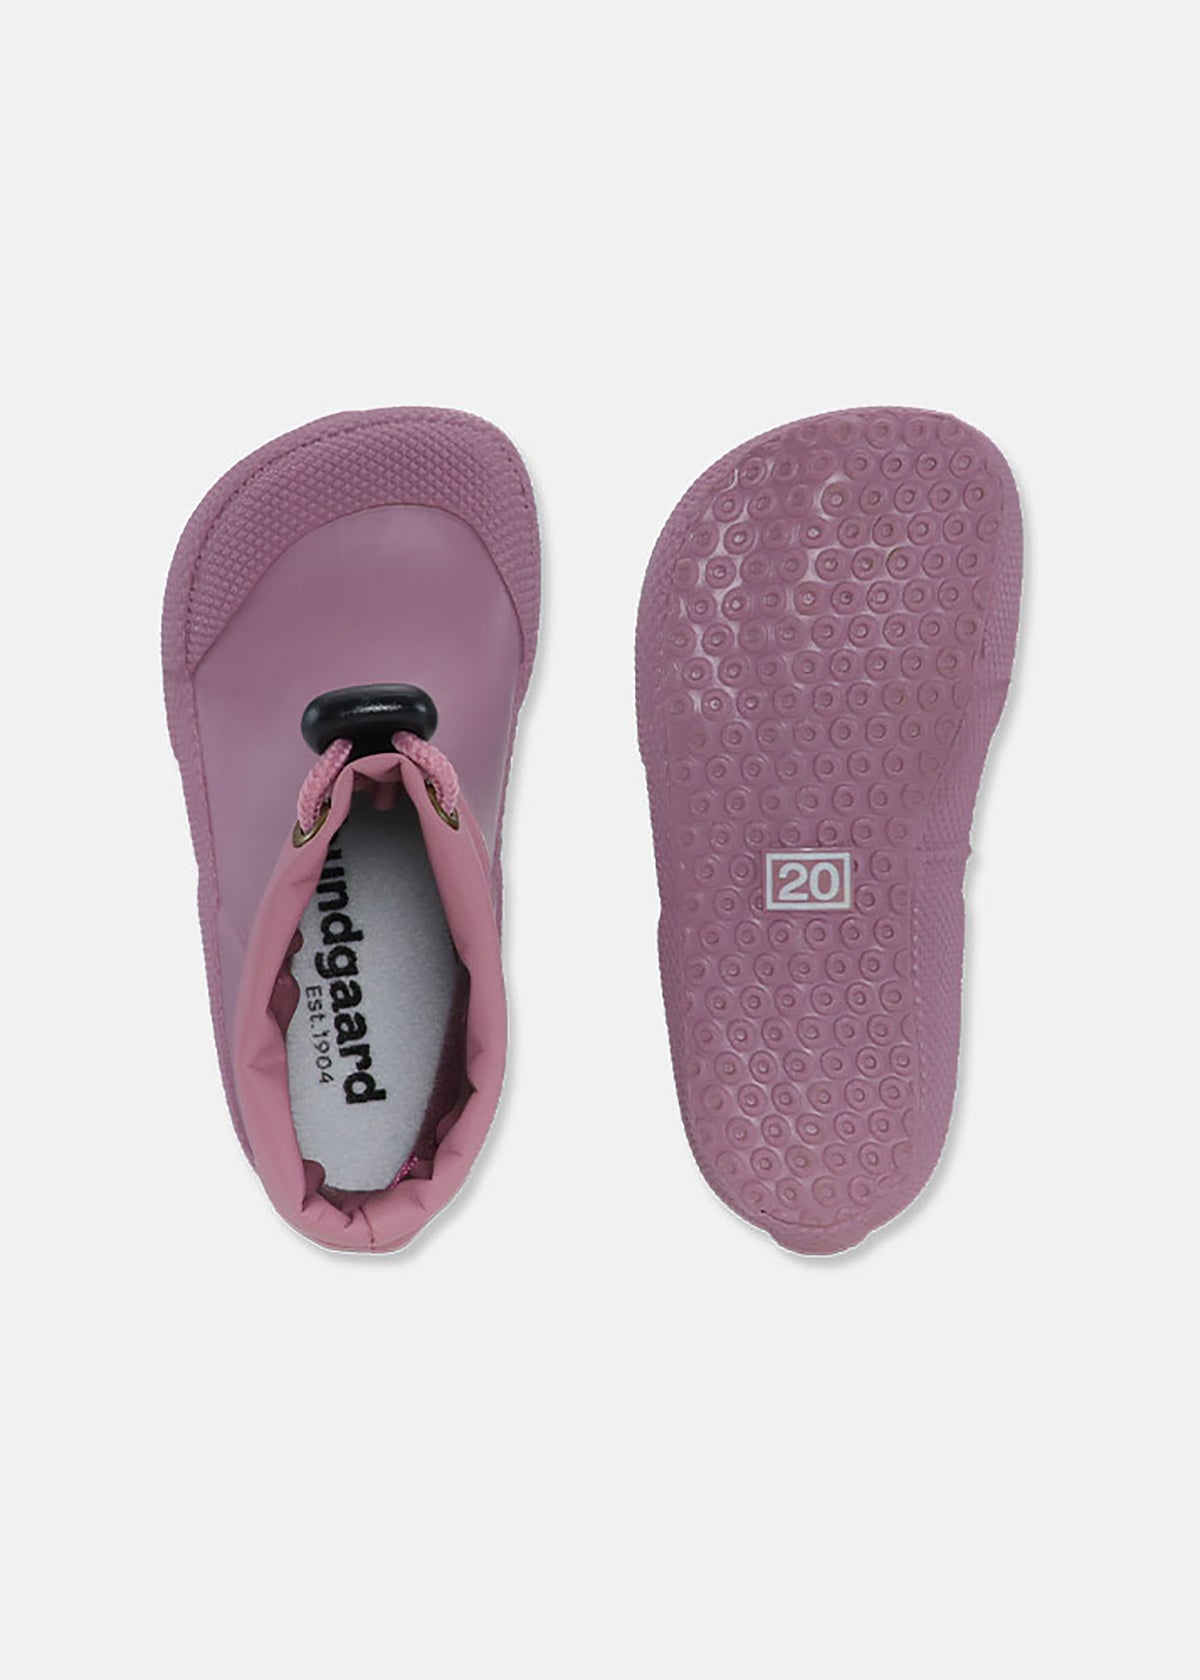 Rubber boots for toddlers - Cover, pink, Bundgaard Zero Heel